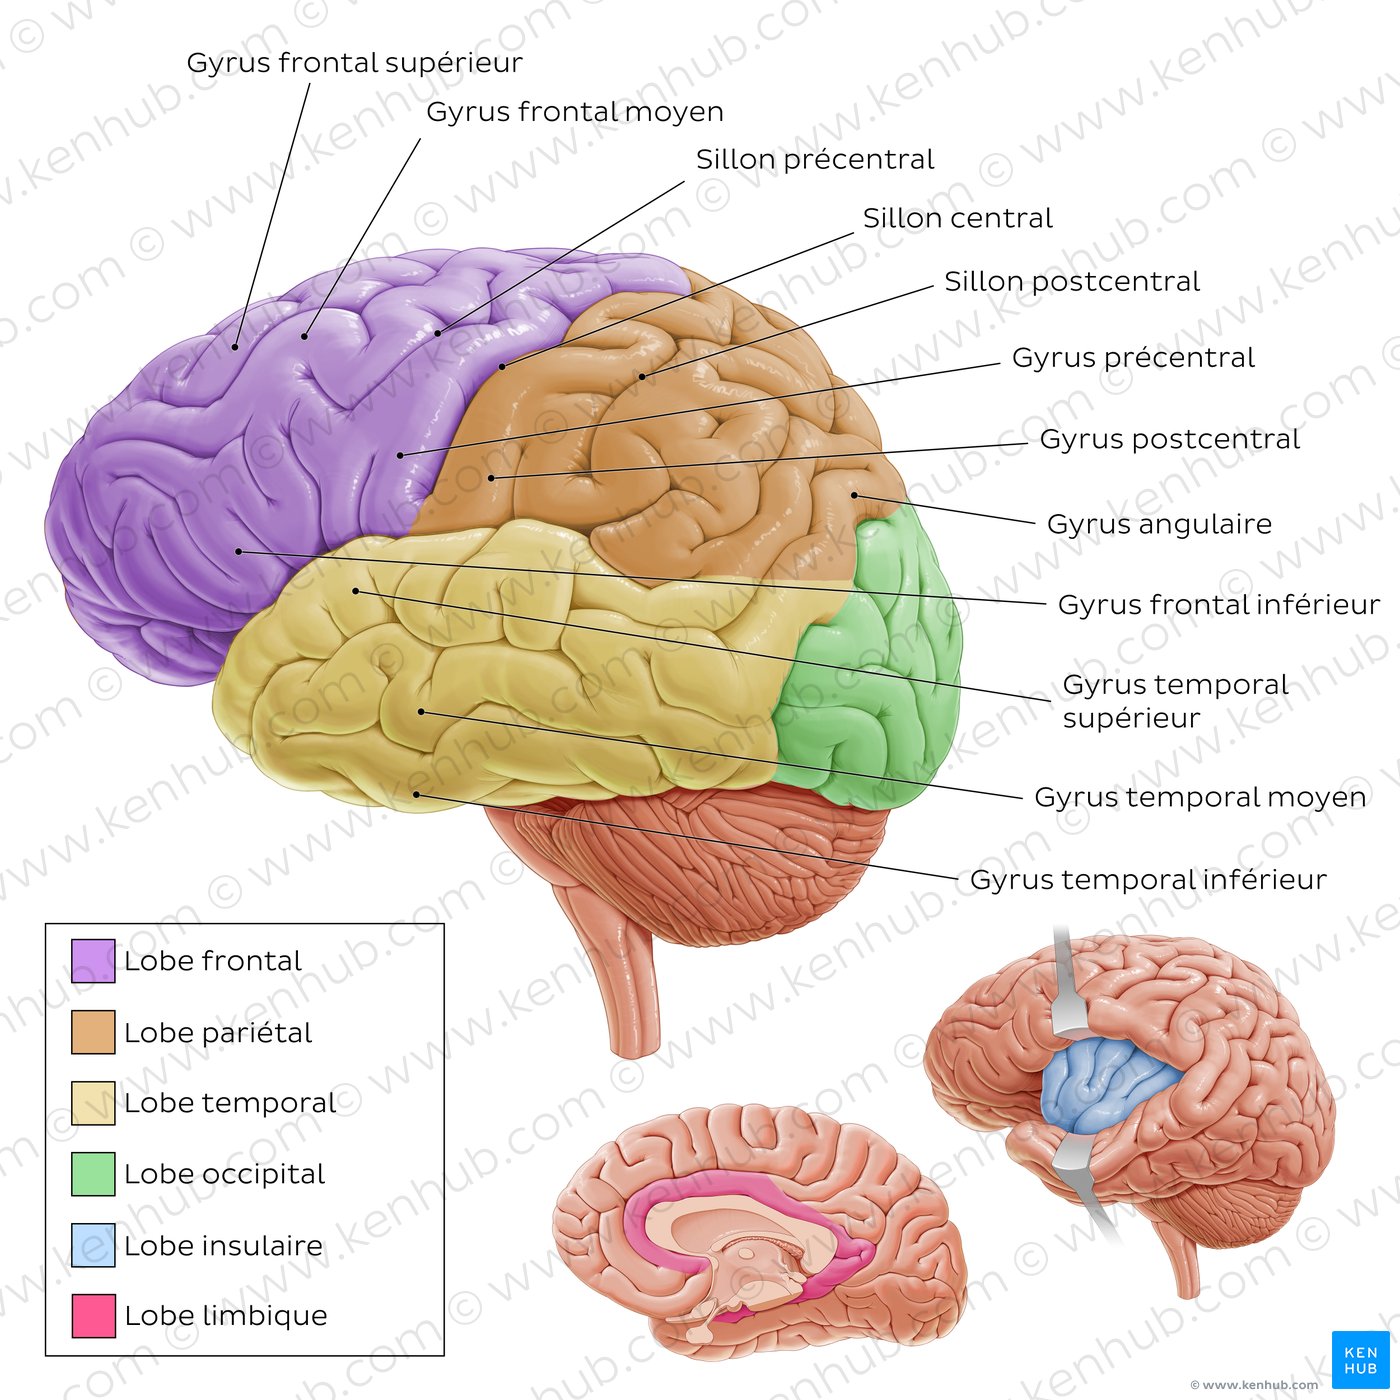 Anatomie du cerveau : vue latérale gauche